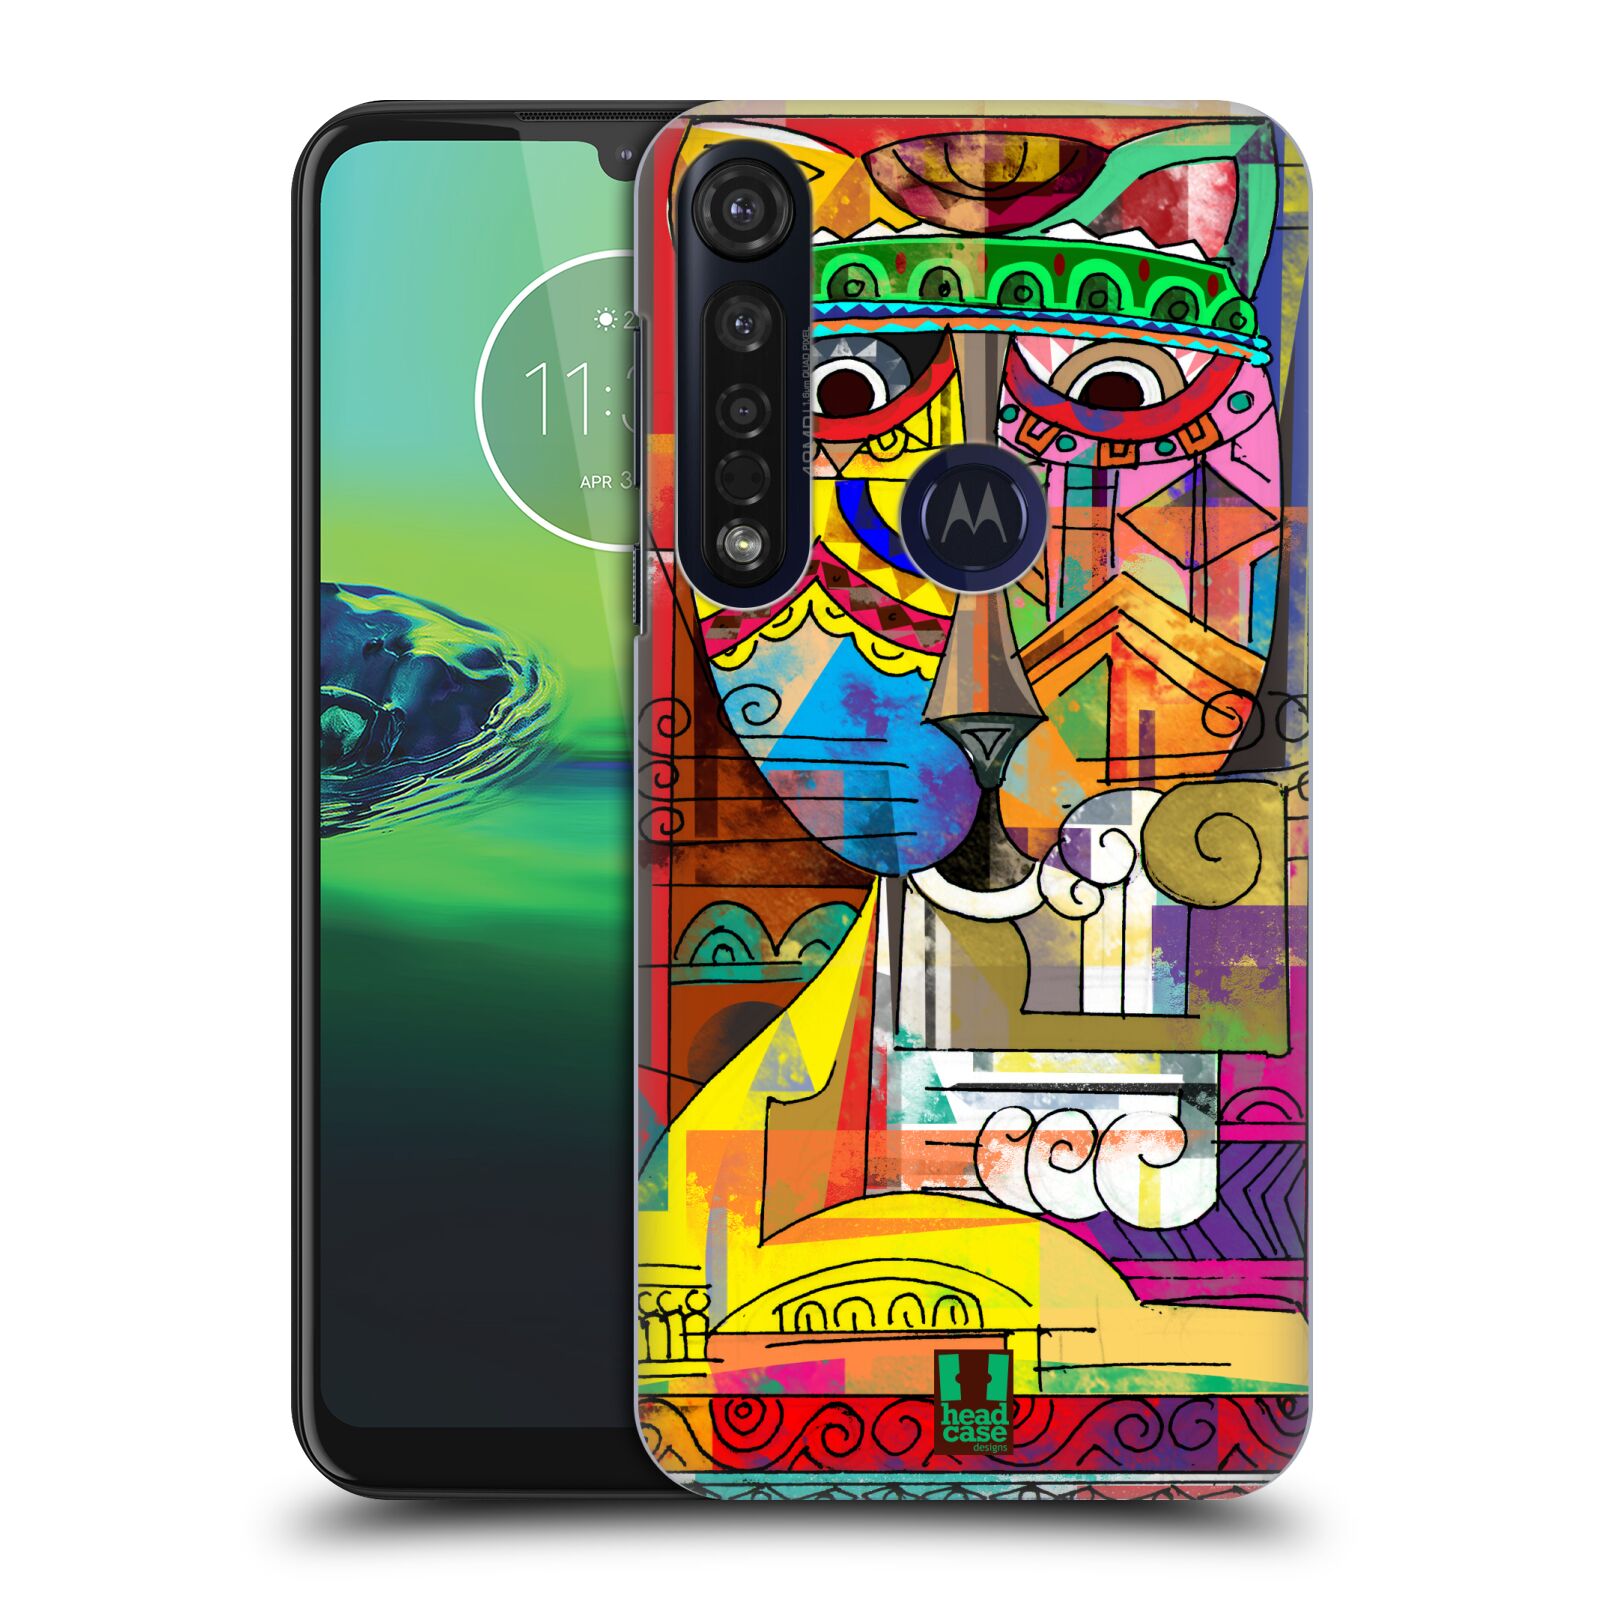 Pouzdro na mobil Motorola Moto G8 PLUS - HEAD CASE - vzor Aztécký vzor abstrakce kočka SIAMSKÁ